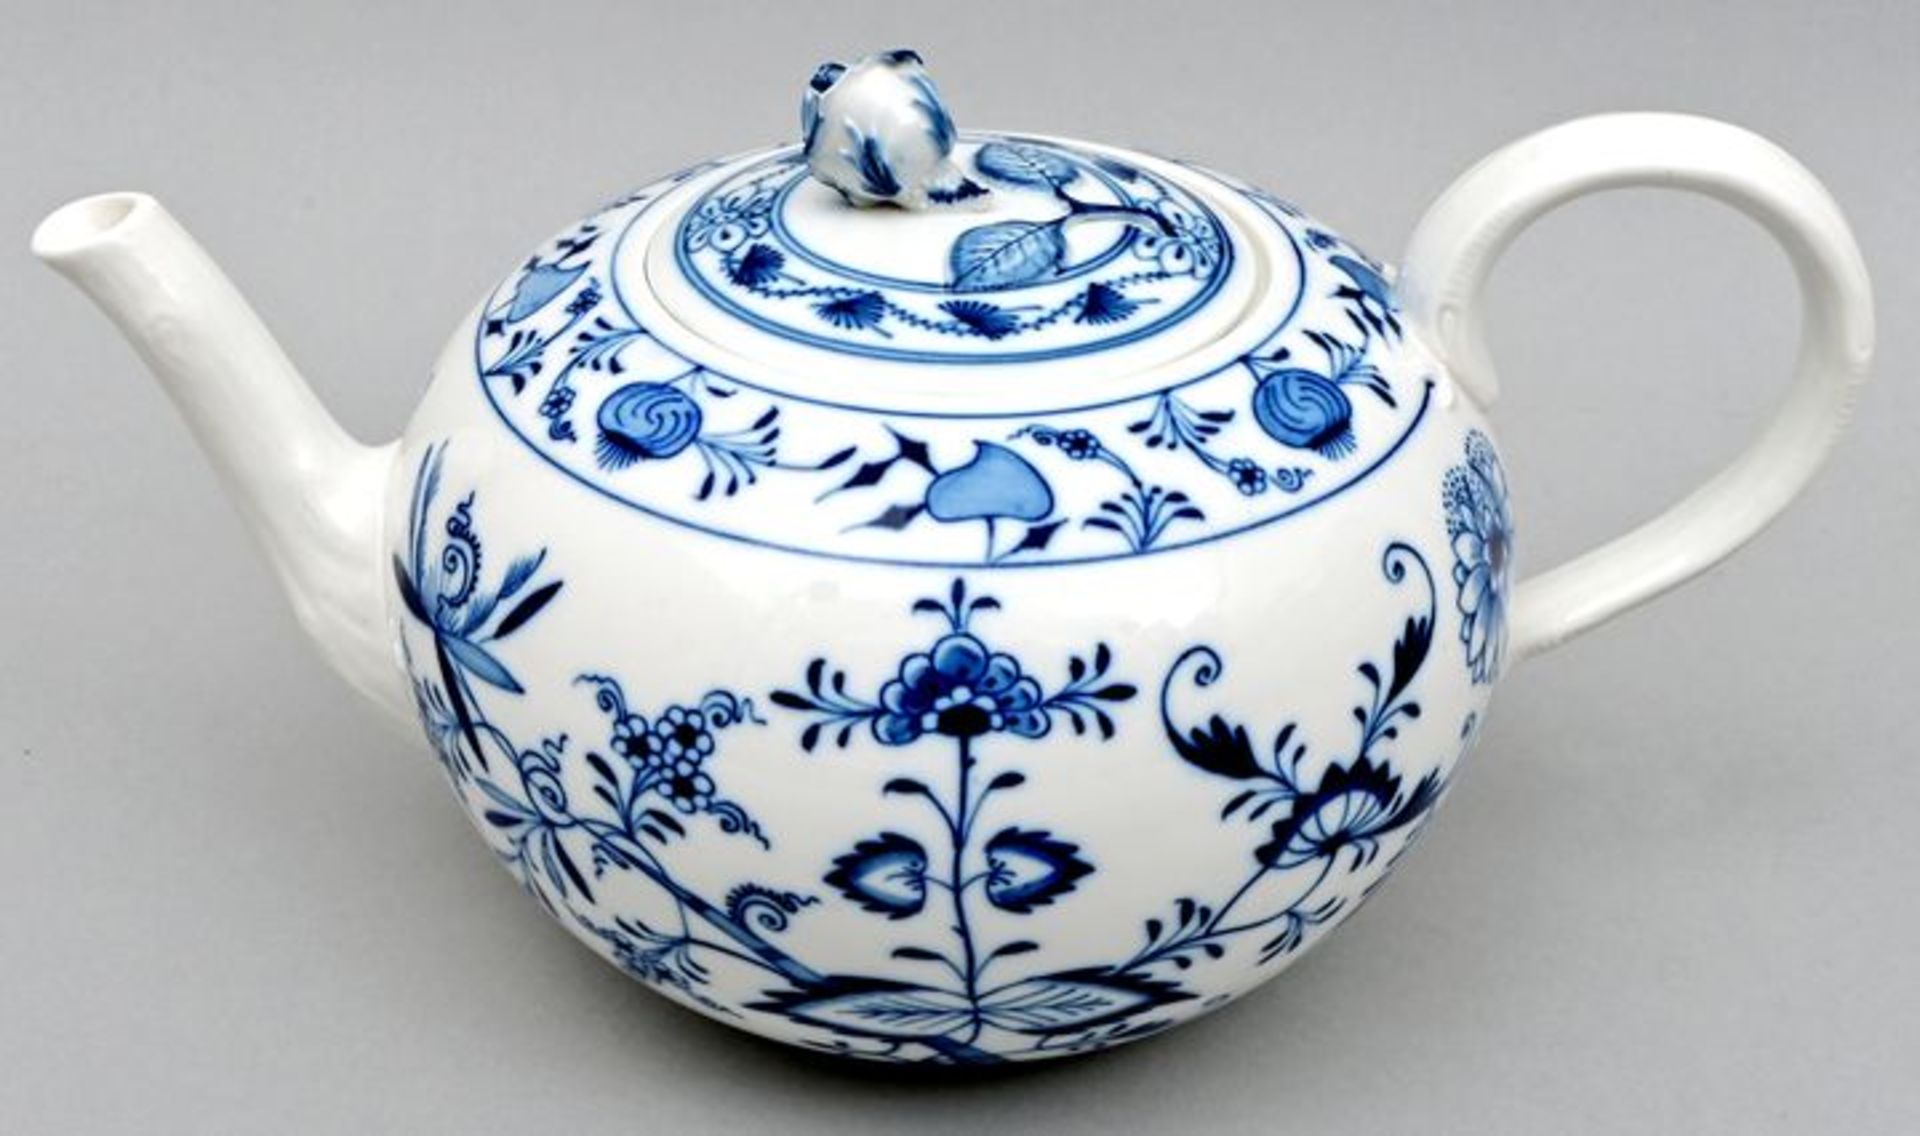 Zwiebelmuster-Teekanne/ tea pot blue onion pattern